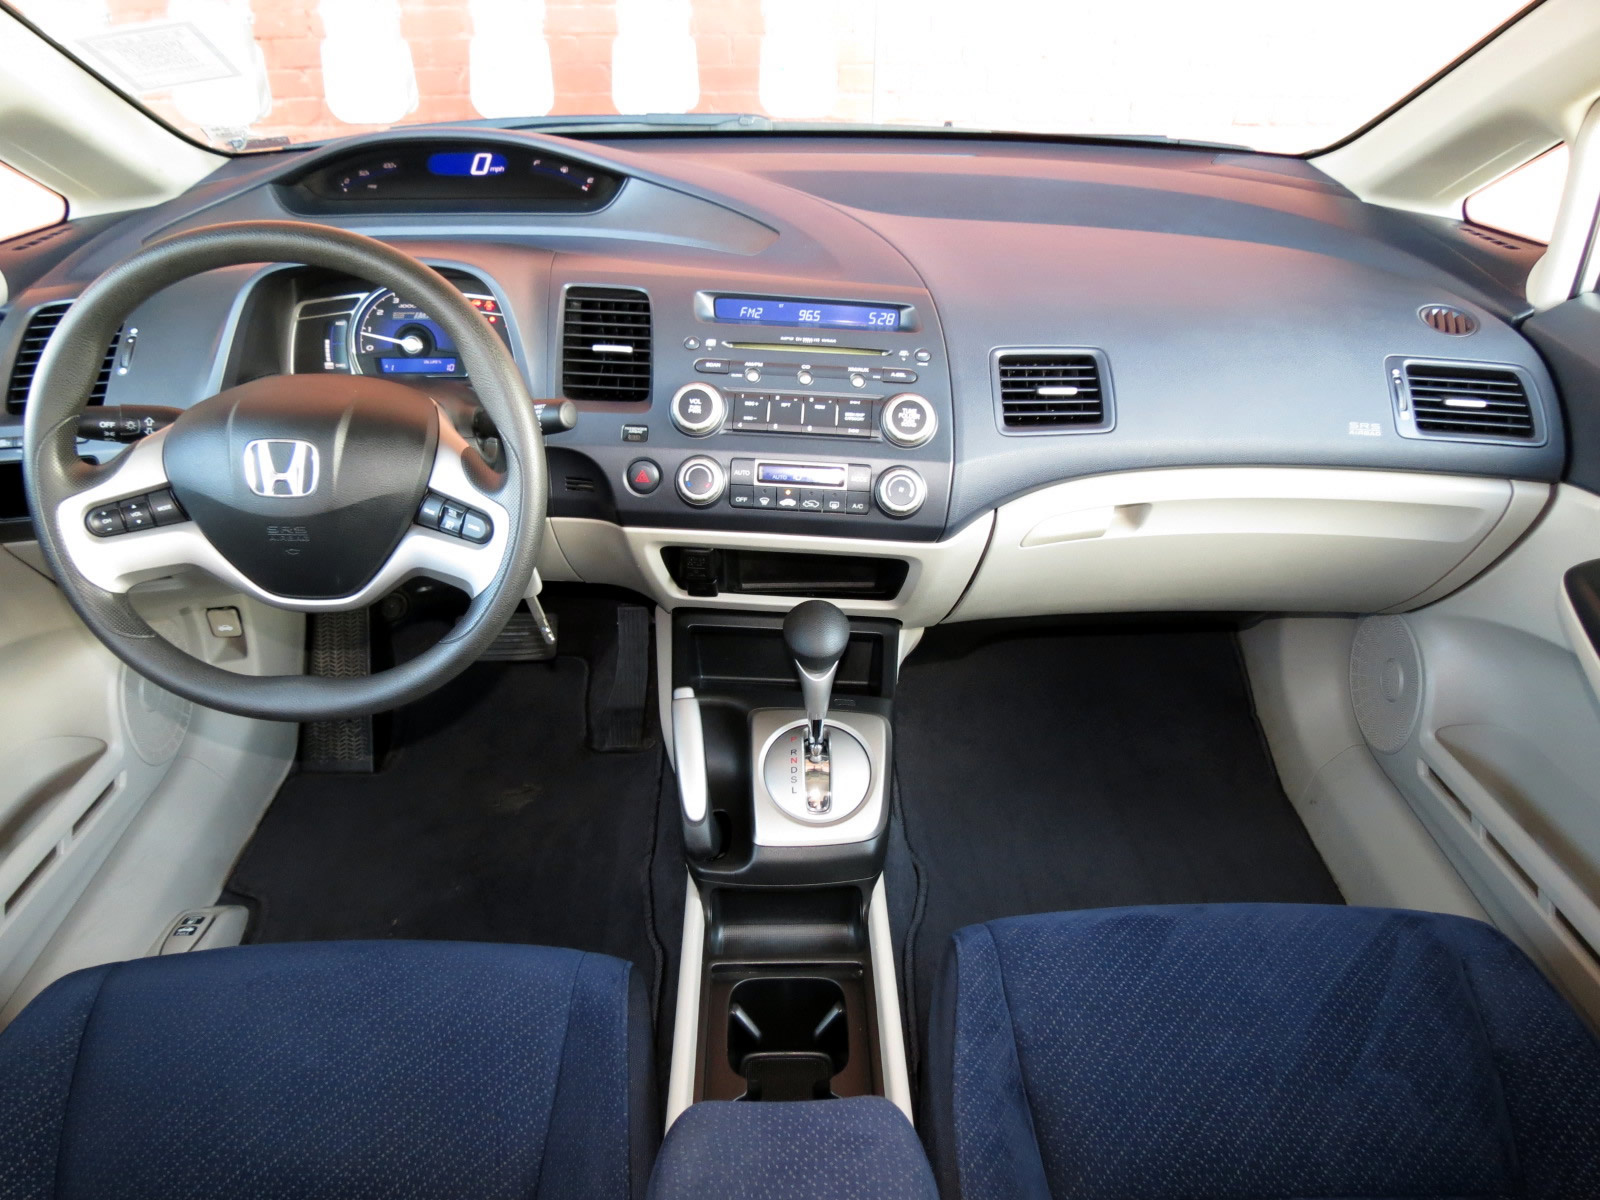 Honda Civic 2010 салон